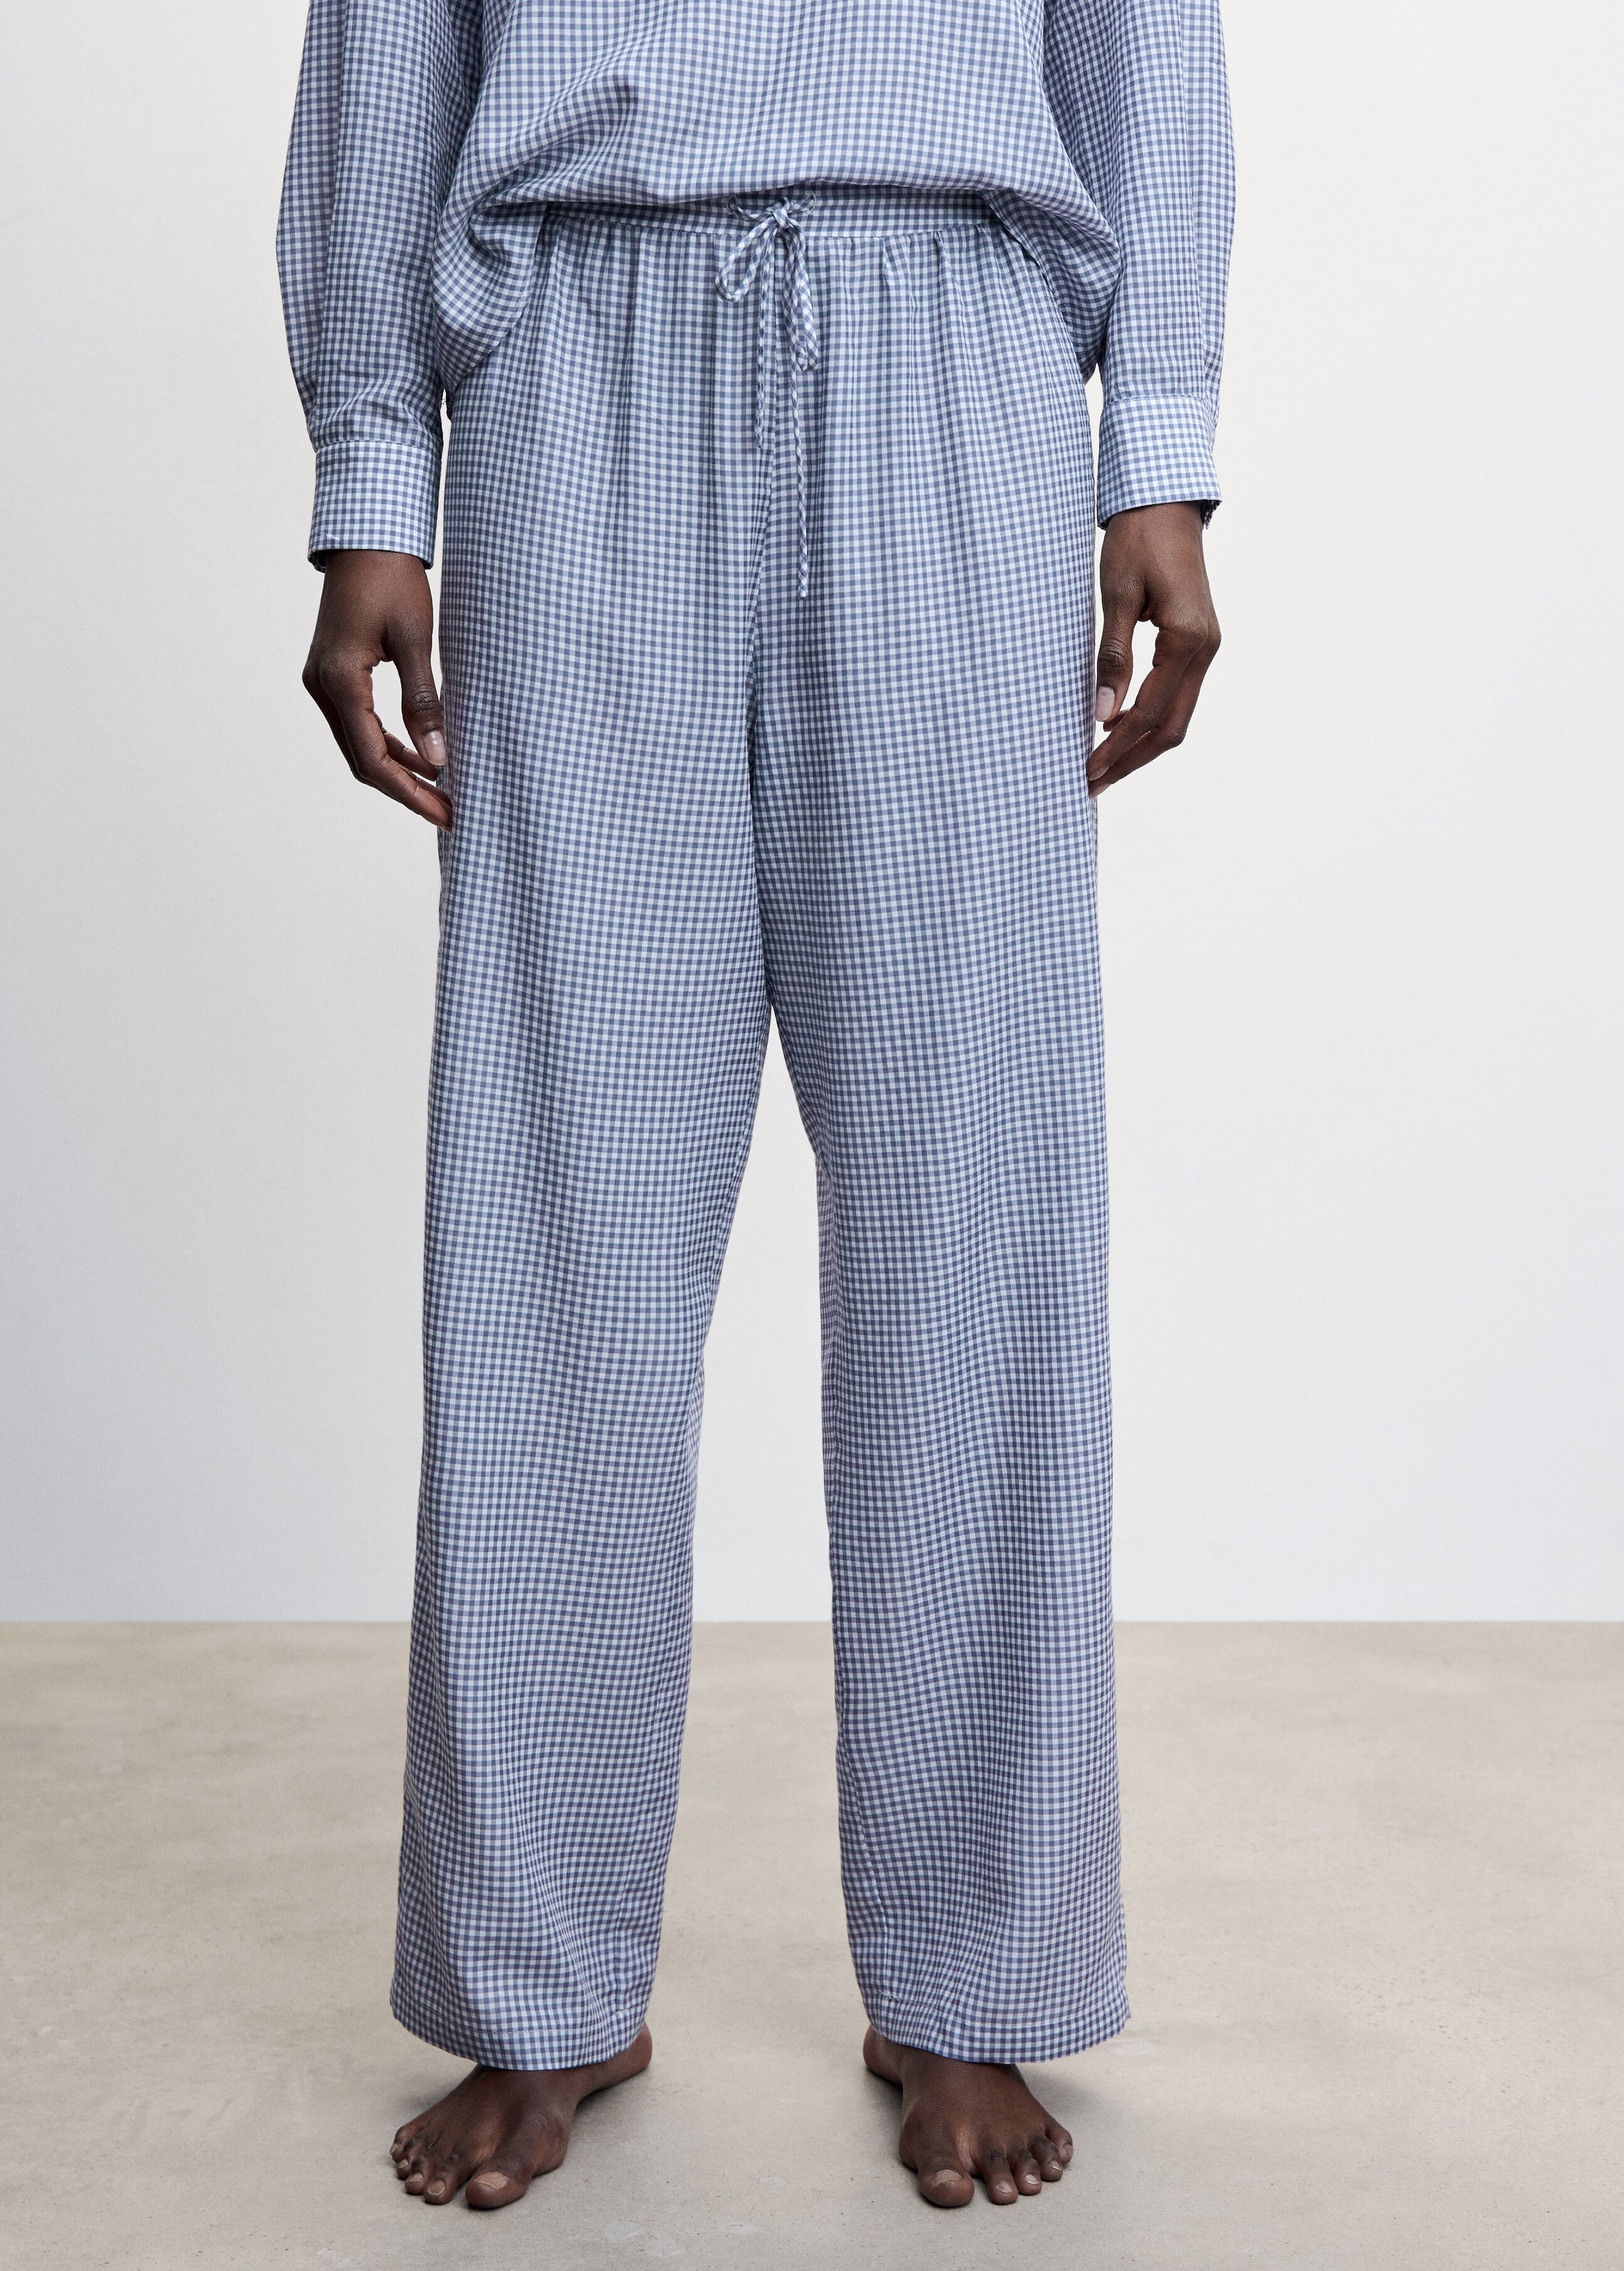 Pantalón pijama vichy - Plano medio